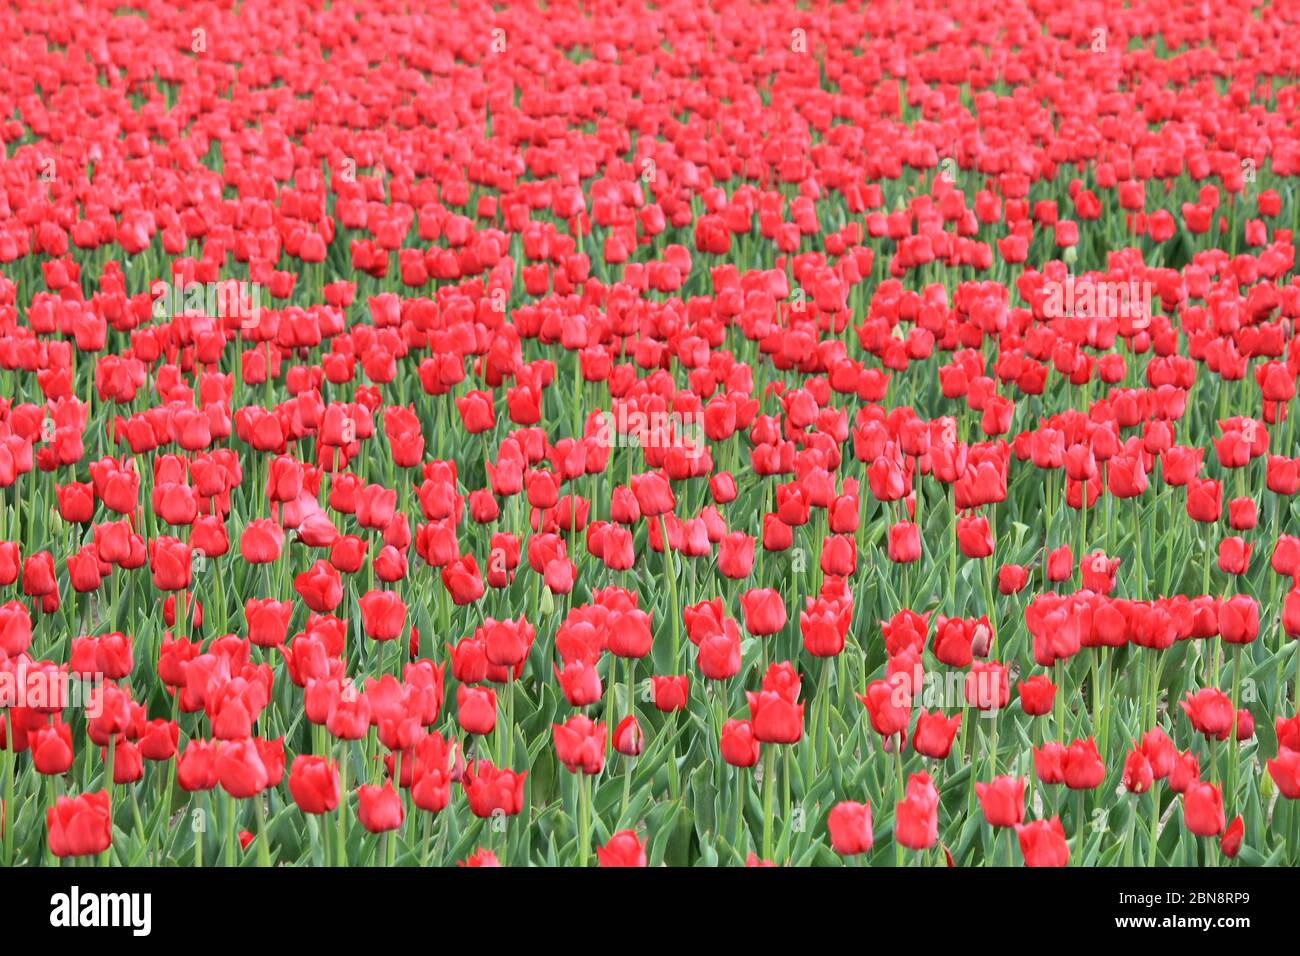 Viele schöne rote Tulpen überall in einem Tulpenfeld in den niederlanden an einem sonnigen Tag im Frühling Stockfoto